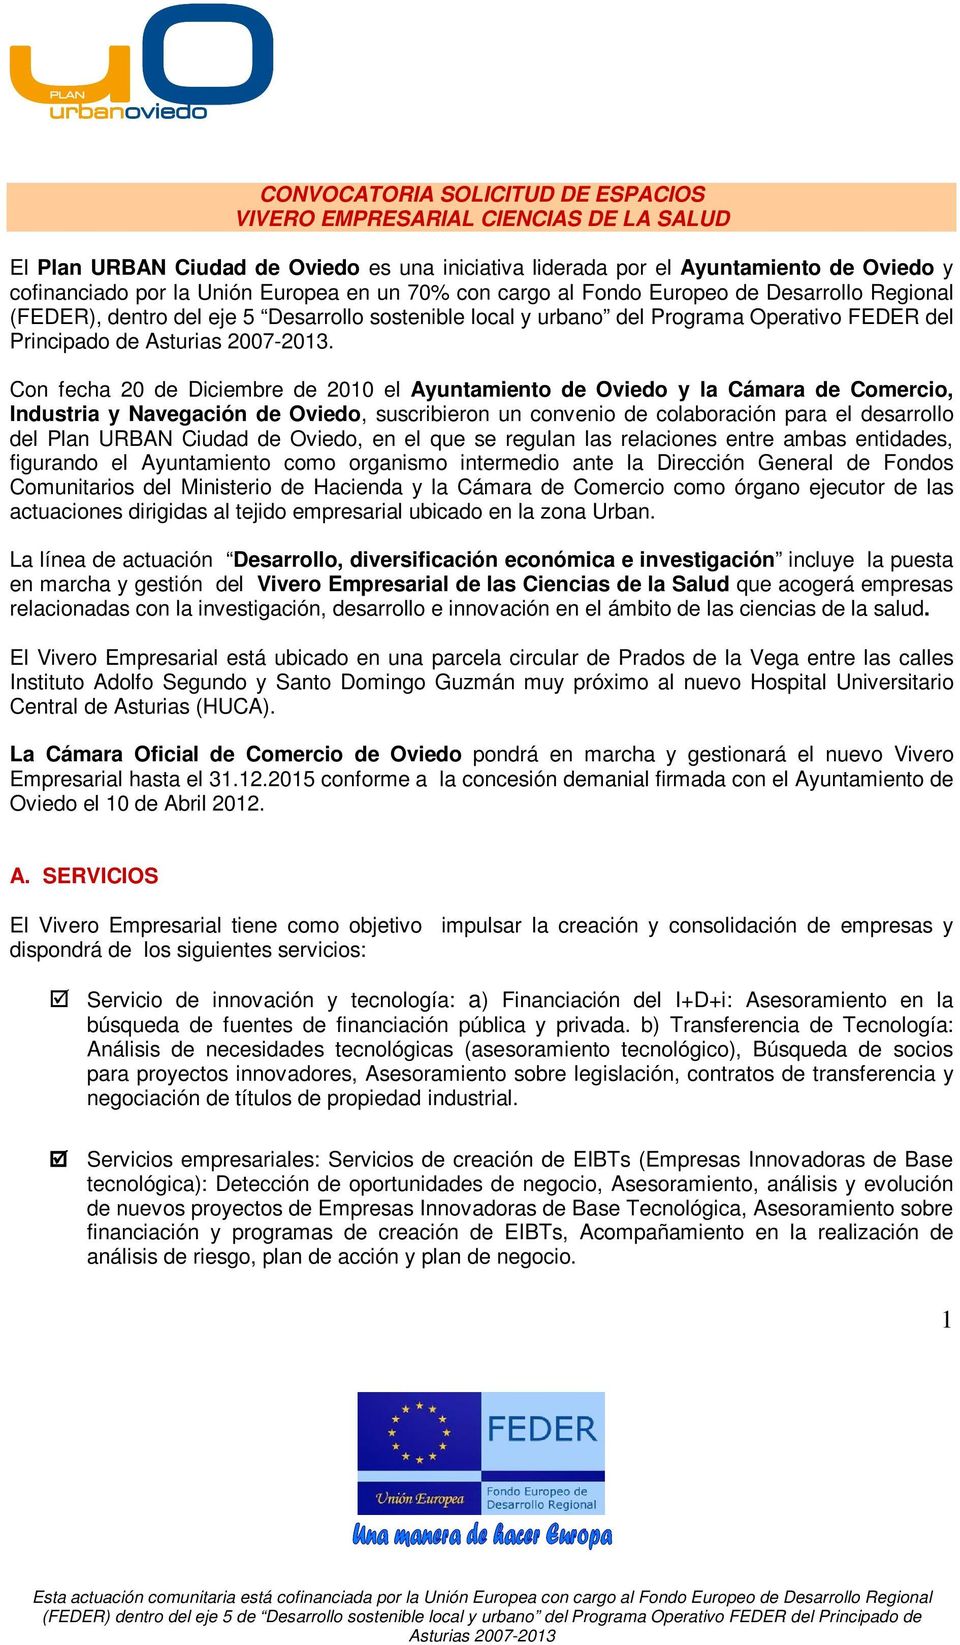 Con fecha 20 de Diciembre de 2010 el Ayuntamiento de Oviedo y la Cámara de Comercio, Industria y Navegación de Oviedo, suscribieron un convenio de colaboración para el desarrollo del Plan URBAN